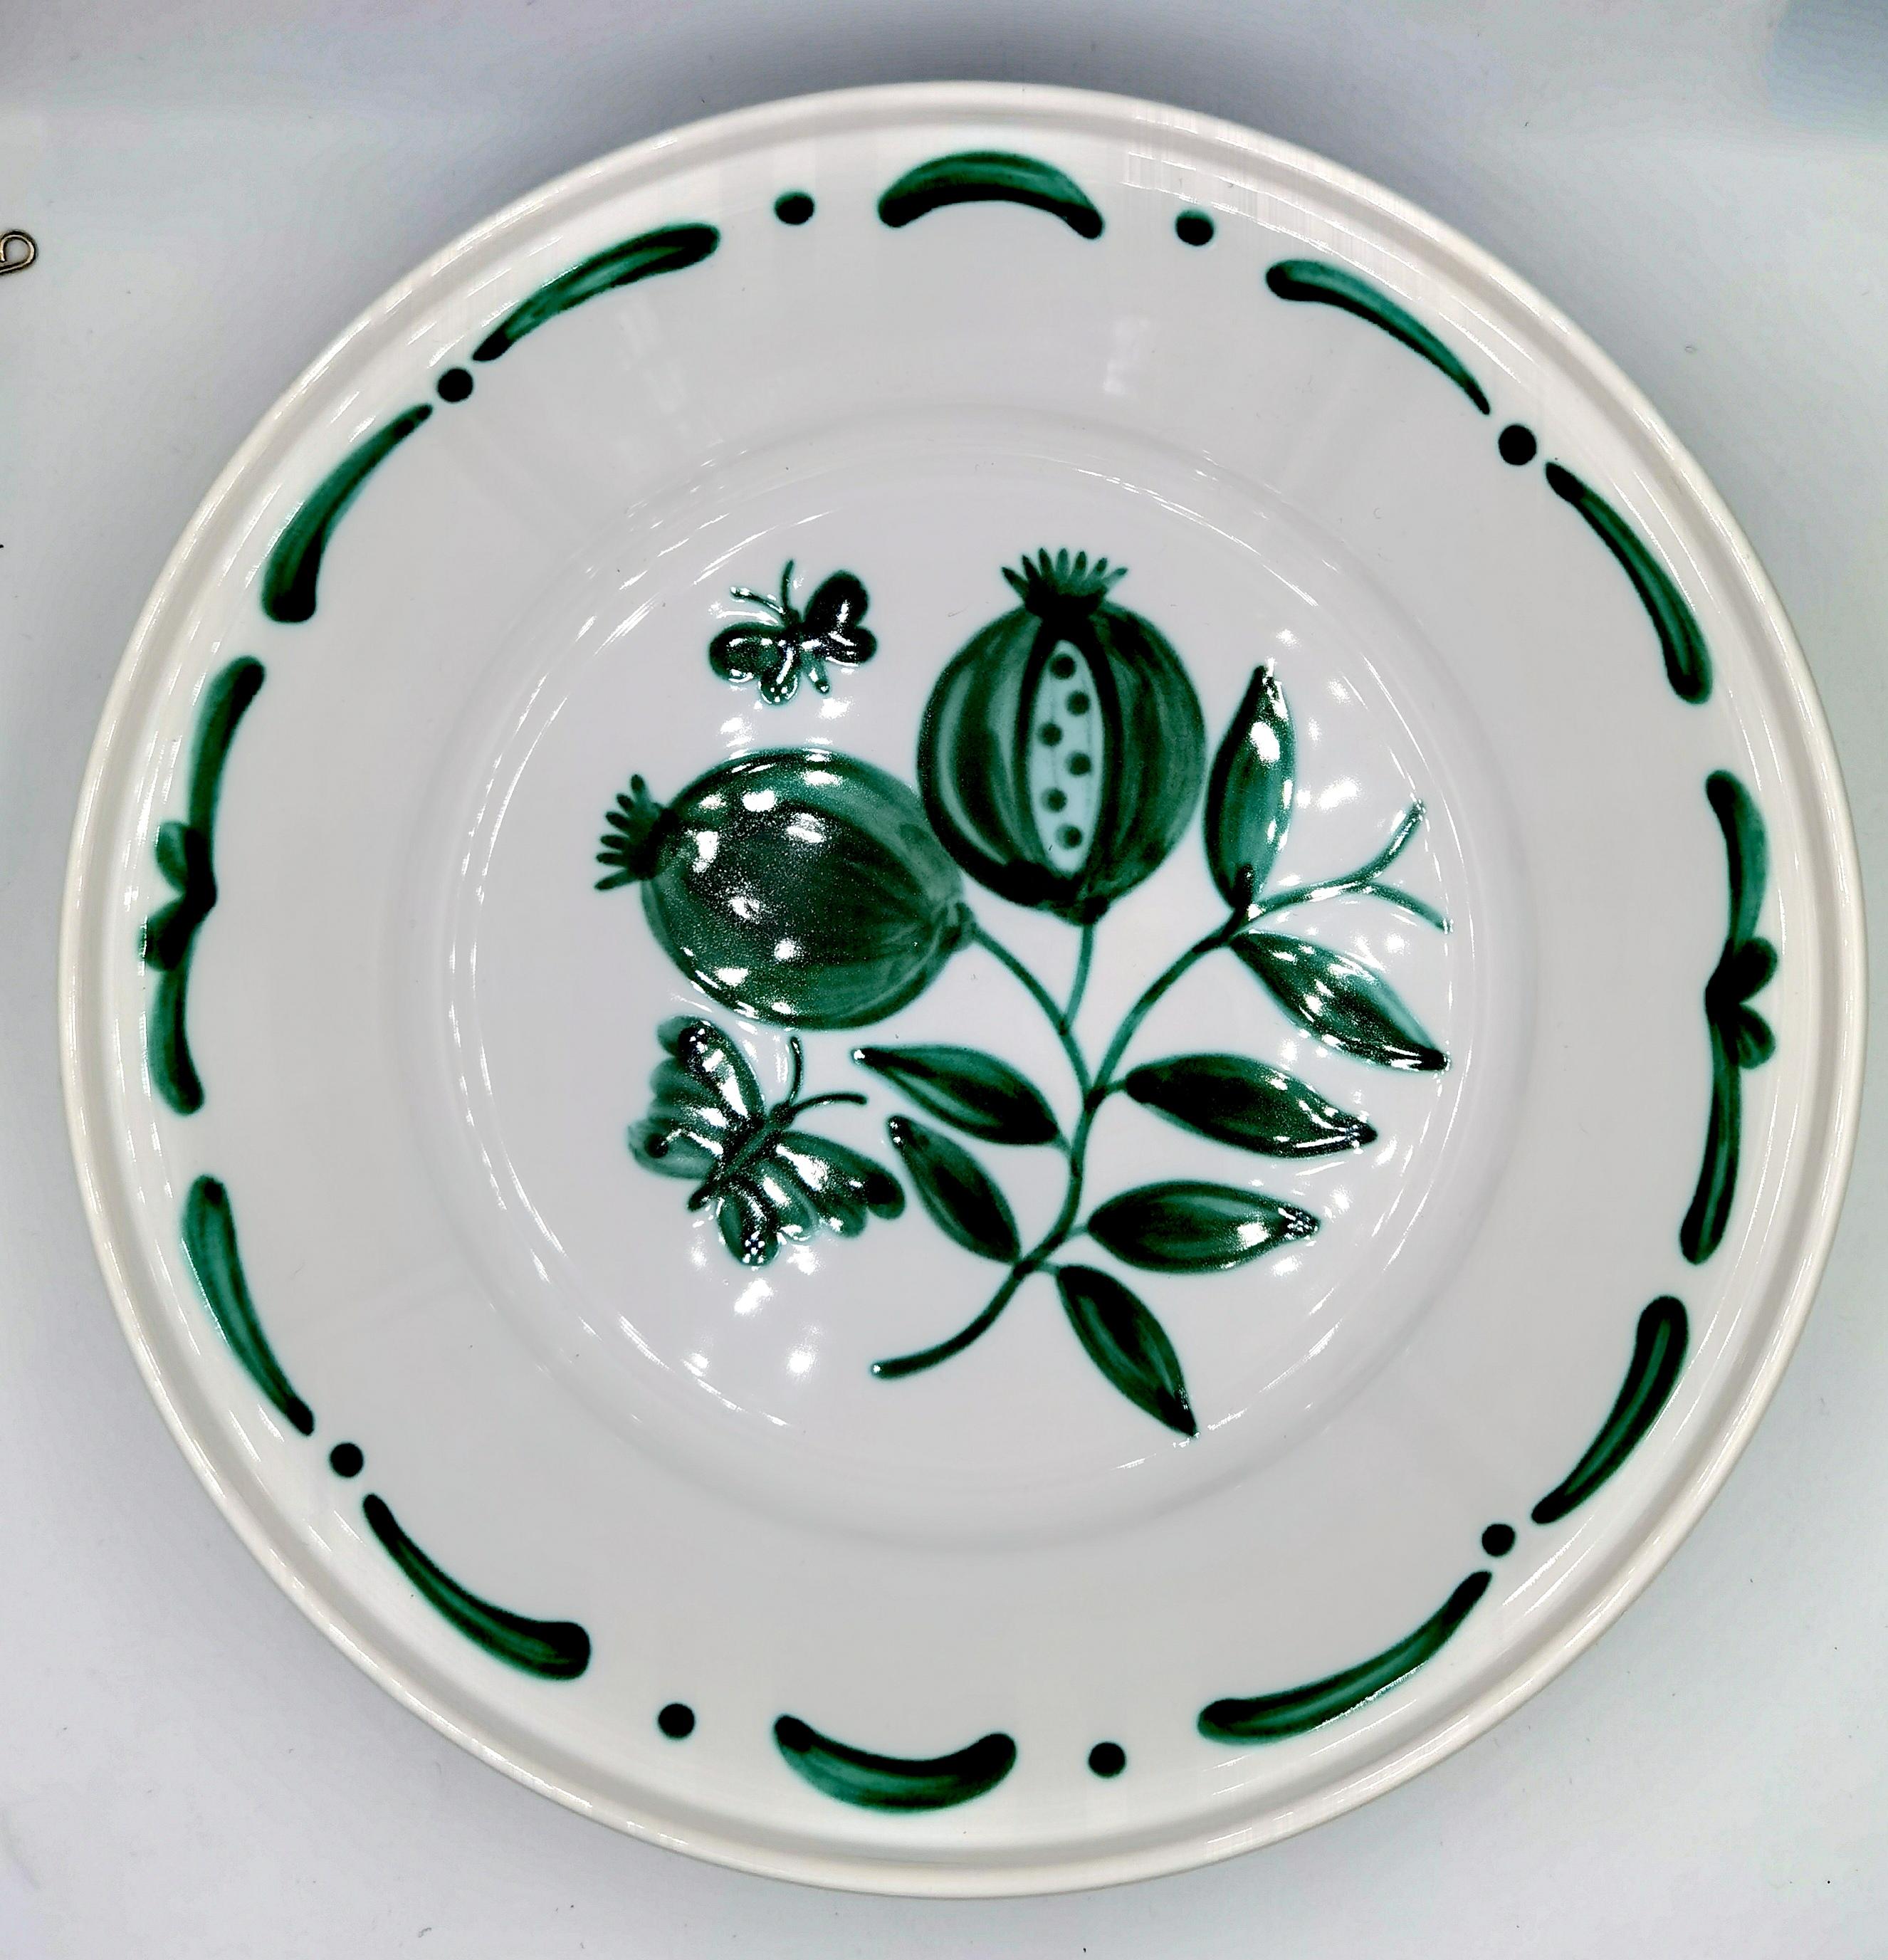 Grand plat en poterie peint à mains libres dans un style champêtre. Décorée d'une grenade verte peinte à la main au centre avec des papillons et une guirlande peinte à la main en vert. La guirlande peut être commandée en différentes couleurs.